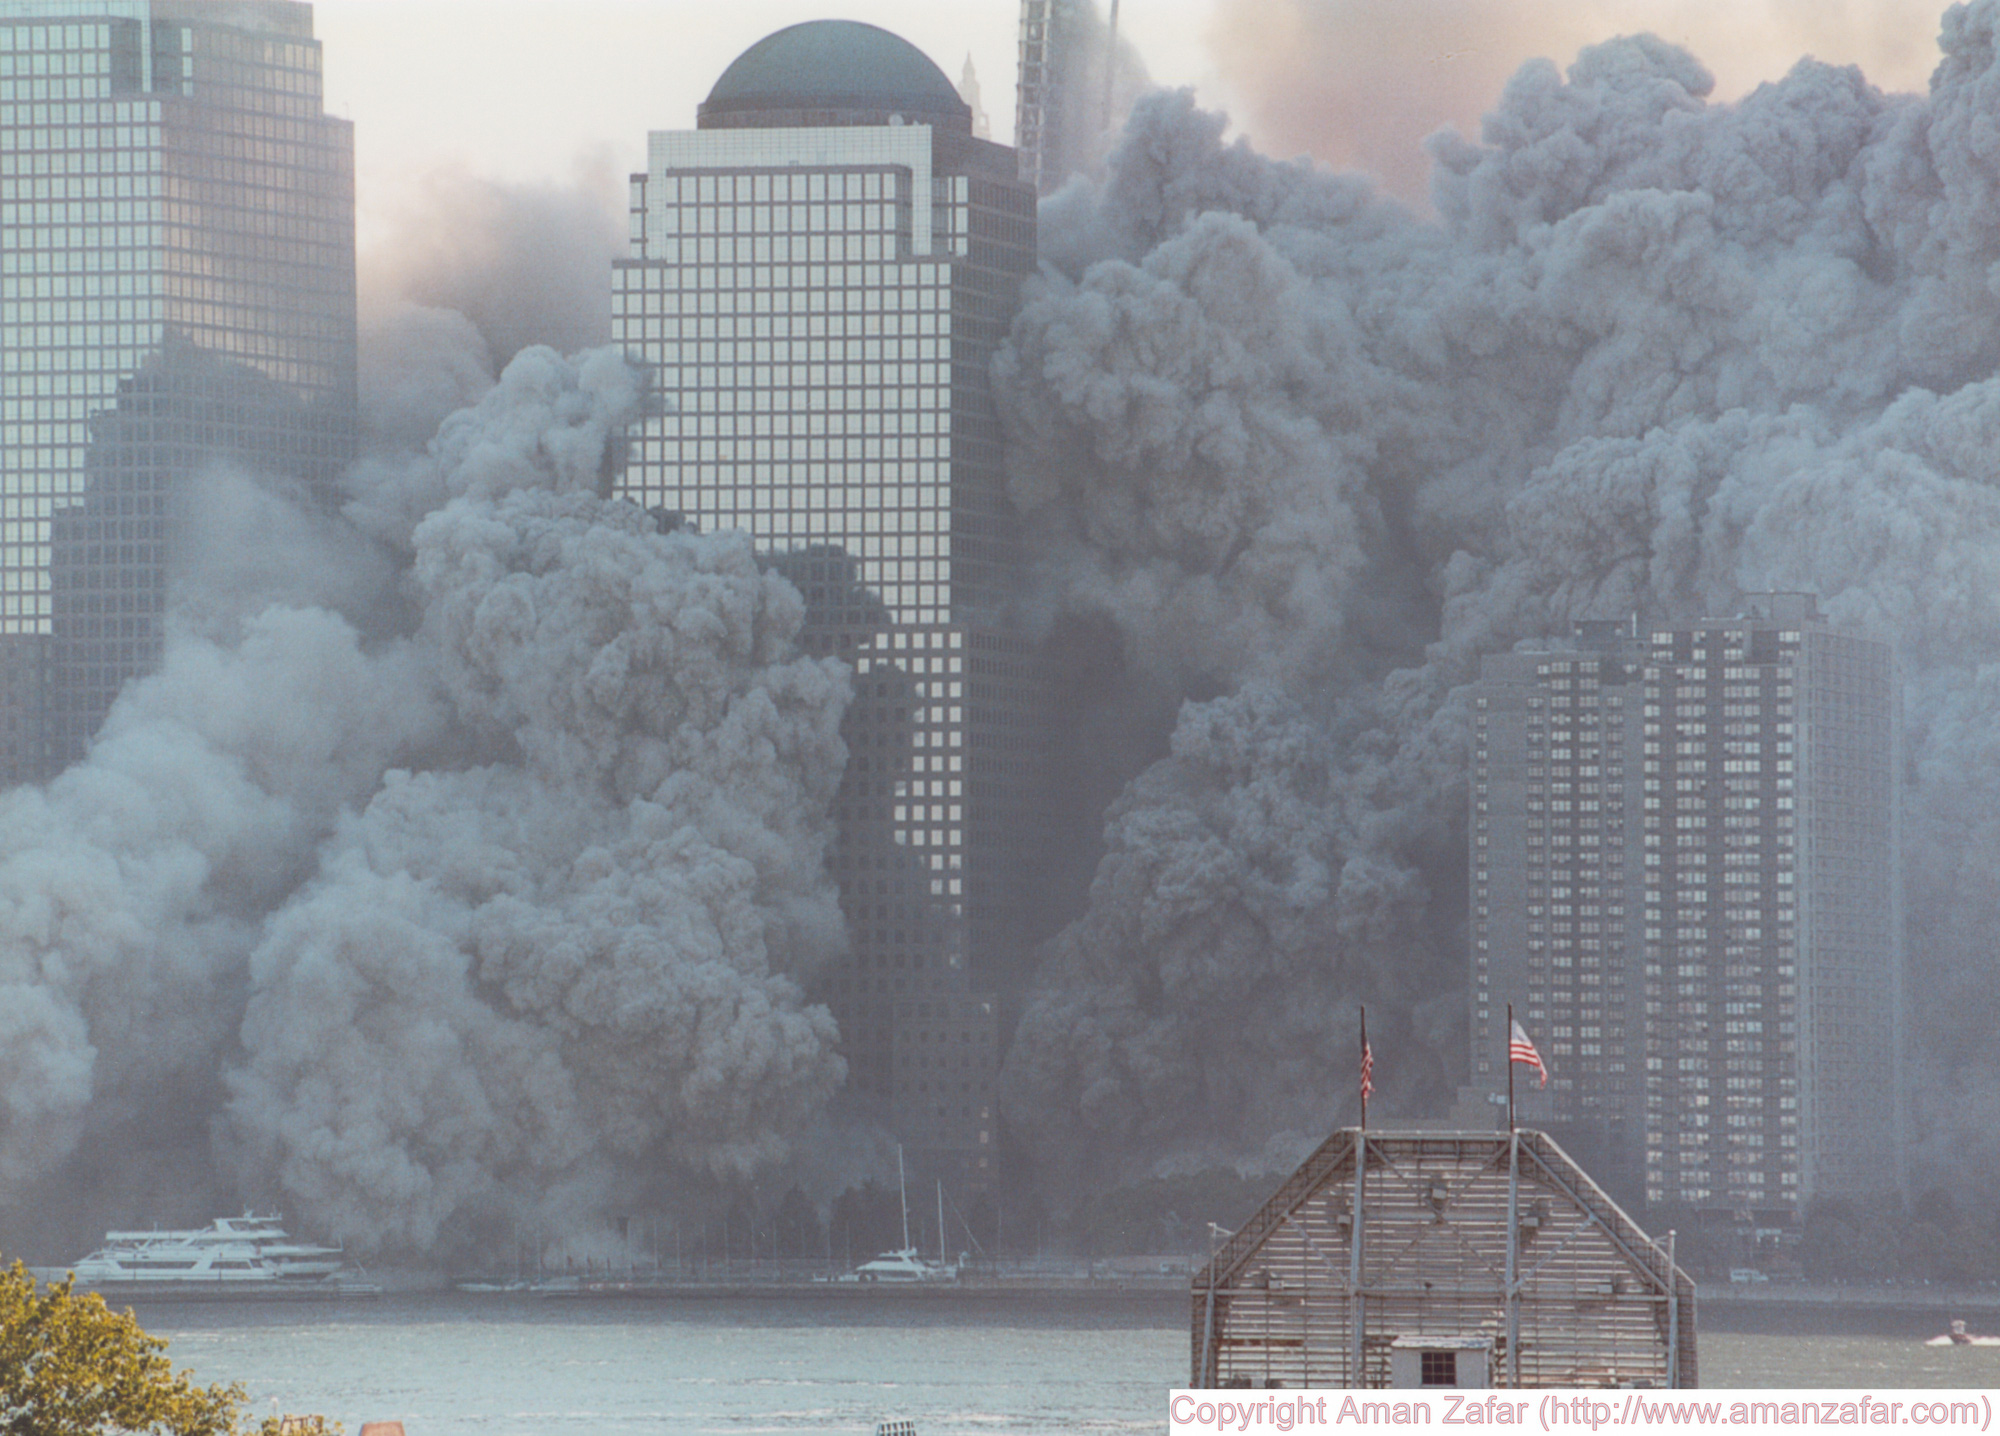 Khoảnh khắc yên bình của Trung tâm Thương mại Thế giới trước vụ khủng bố 11/9 nằm lại trong ký ức của người Mỹ - Ảnh 23.